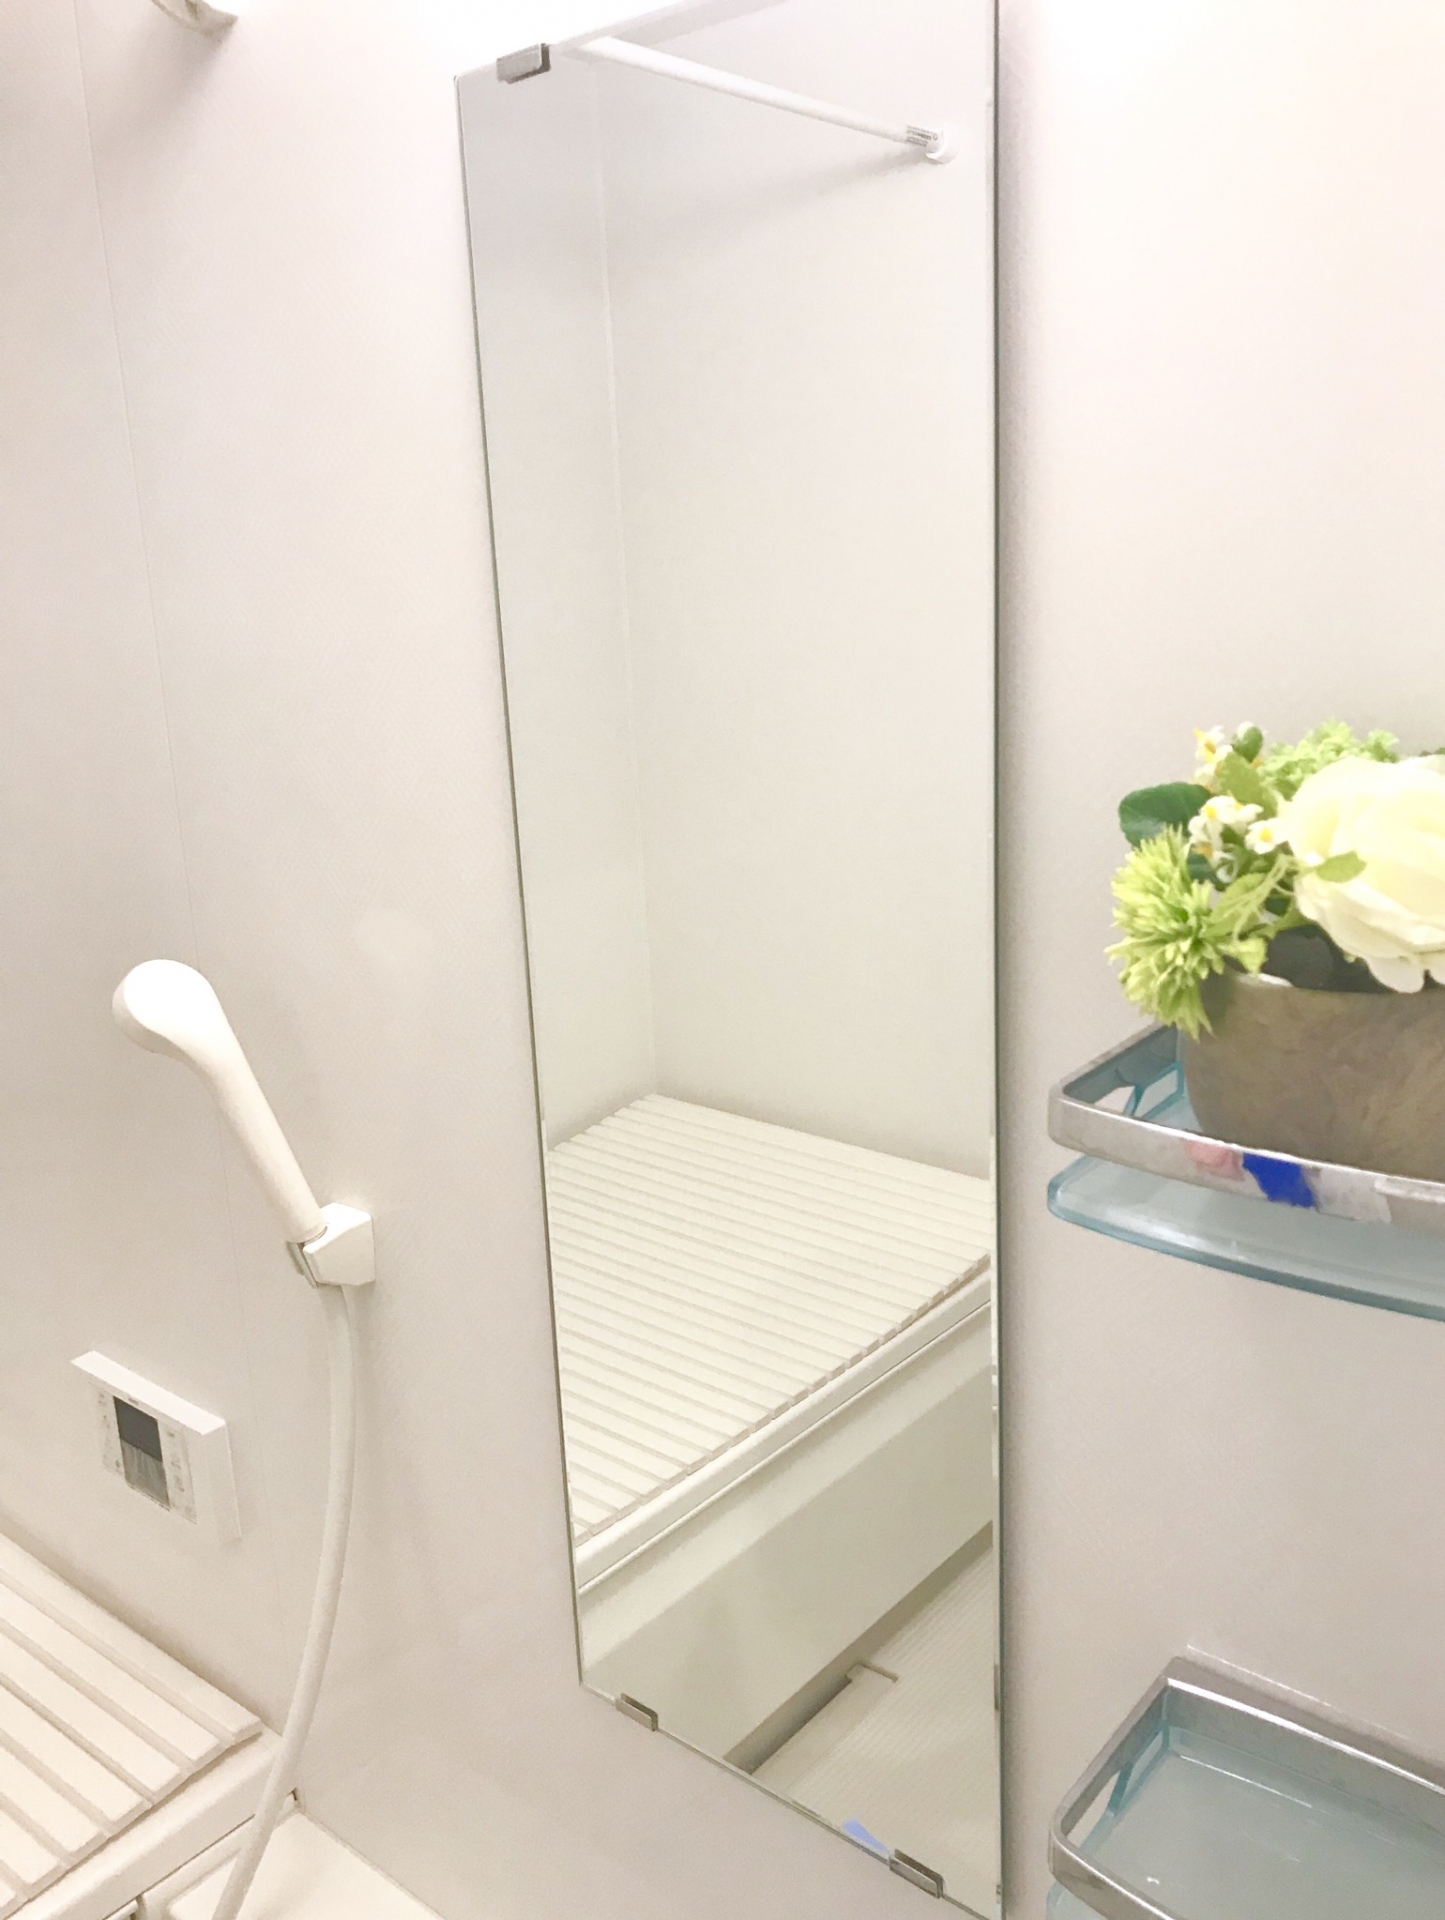 鏡の白い汚れや白い斑点の掃除 洗面台やお風呂の鏡の白い塊を取る方法 お得info